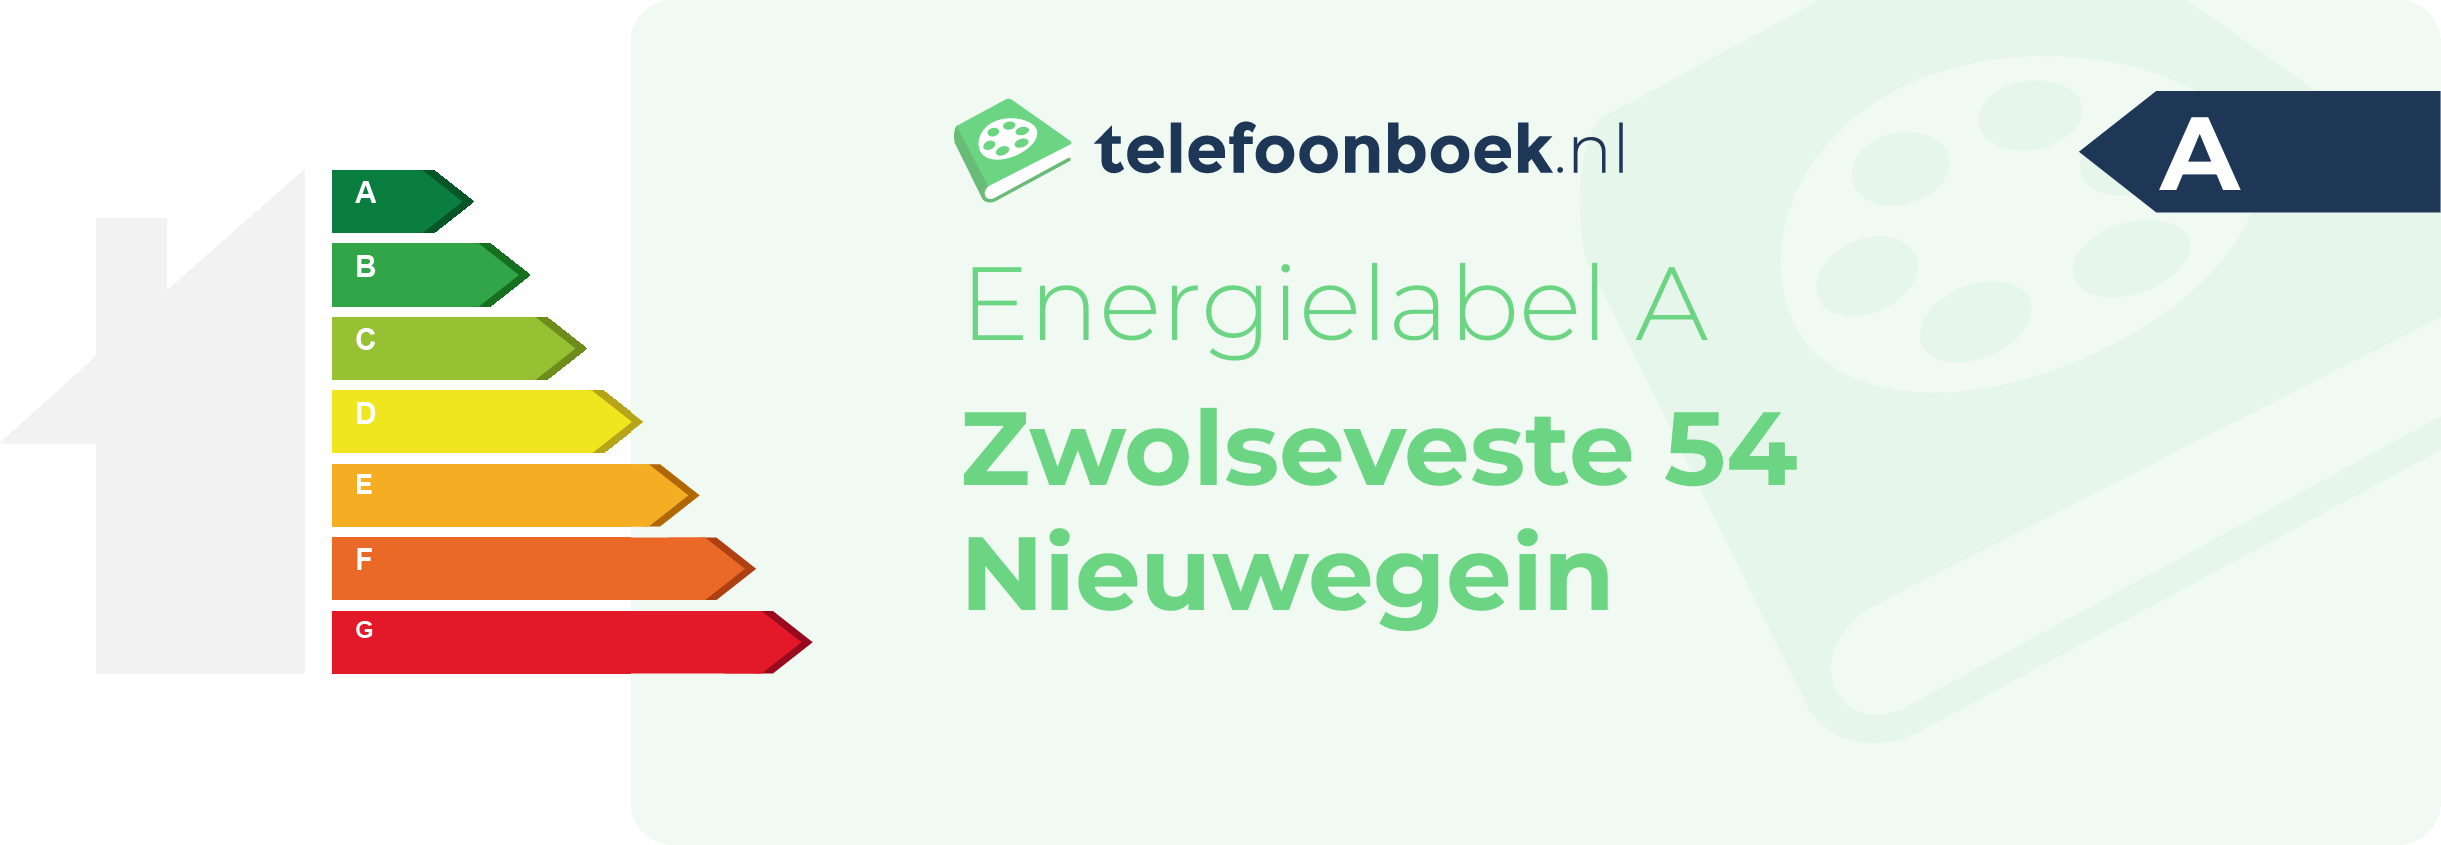 Energielabel Zwolseveste 54 Nieuwegein